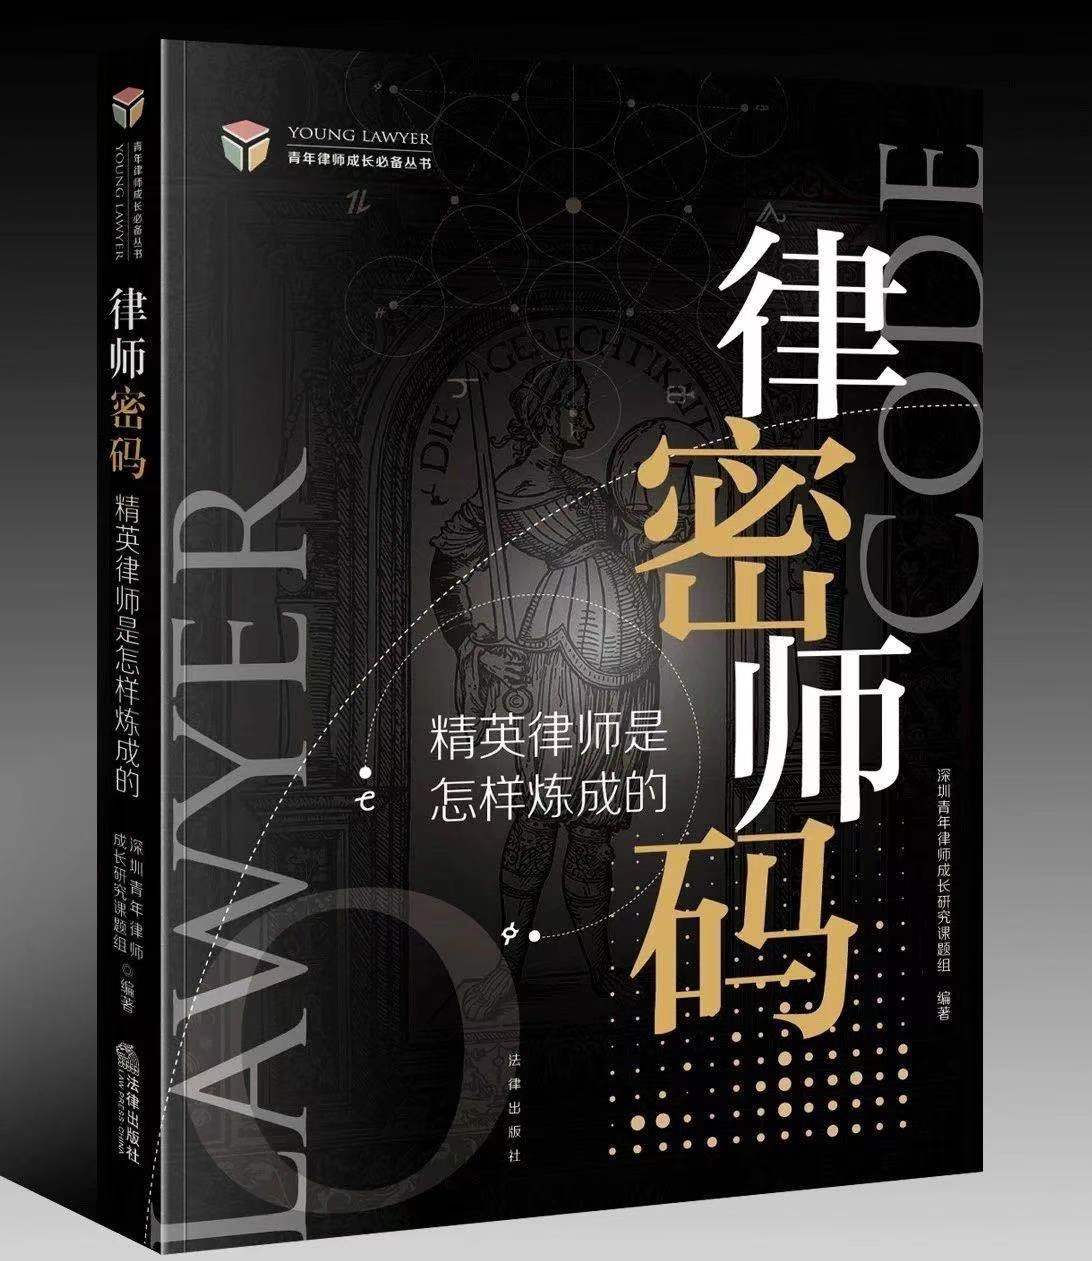 新书发售|黄云律师等九位律师合著《律师密码——精英律师是怎样的》出版